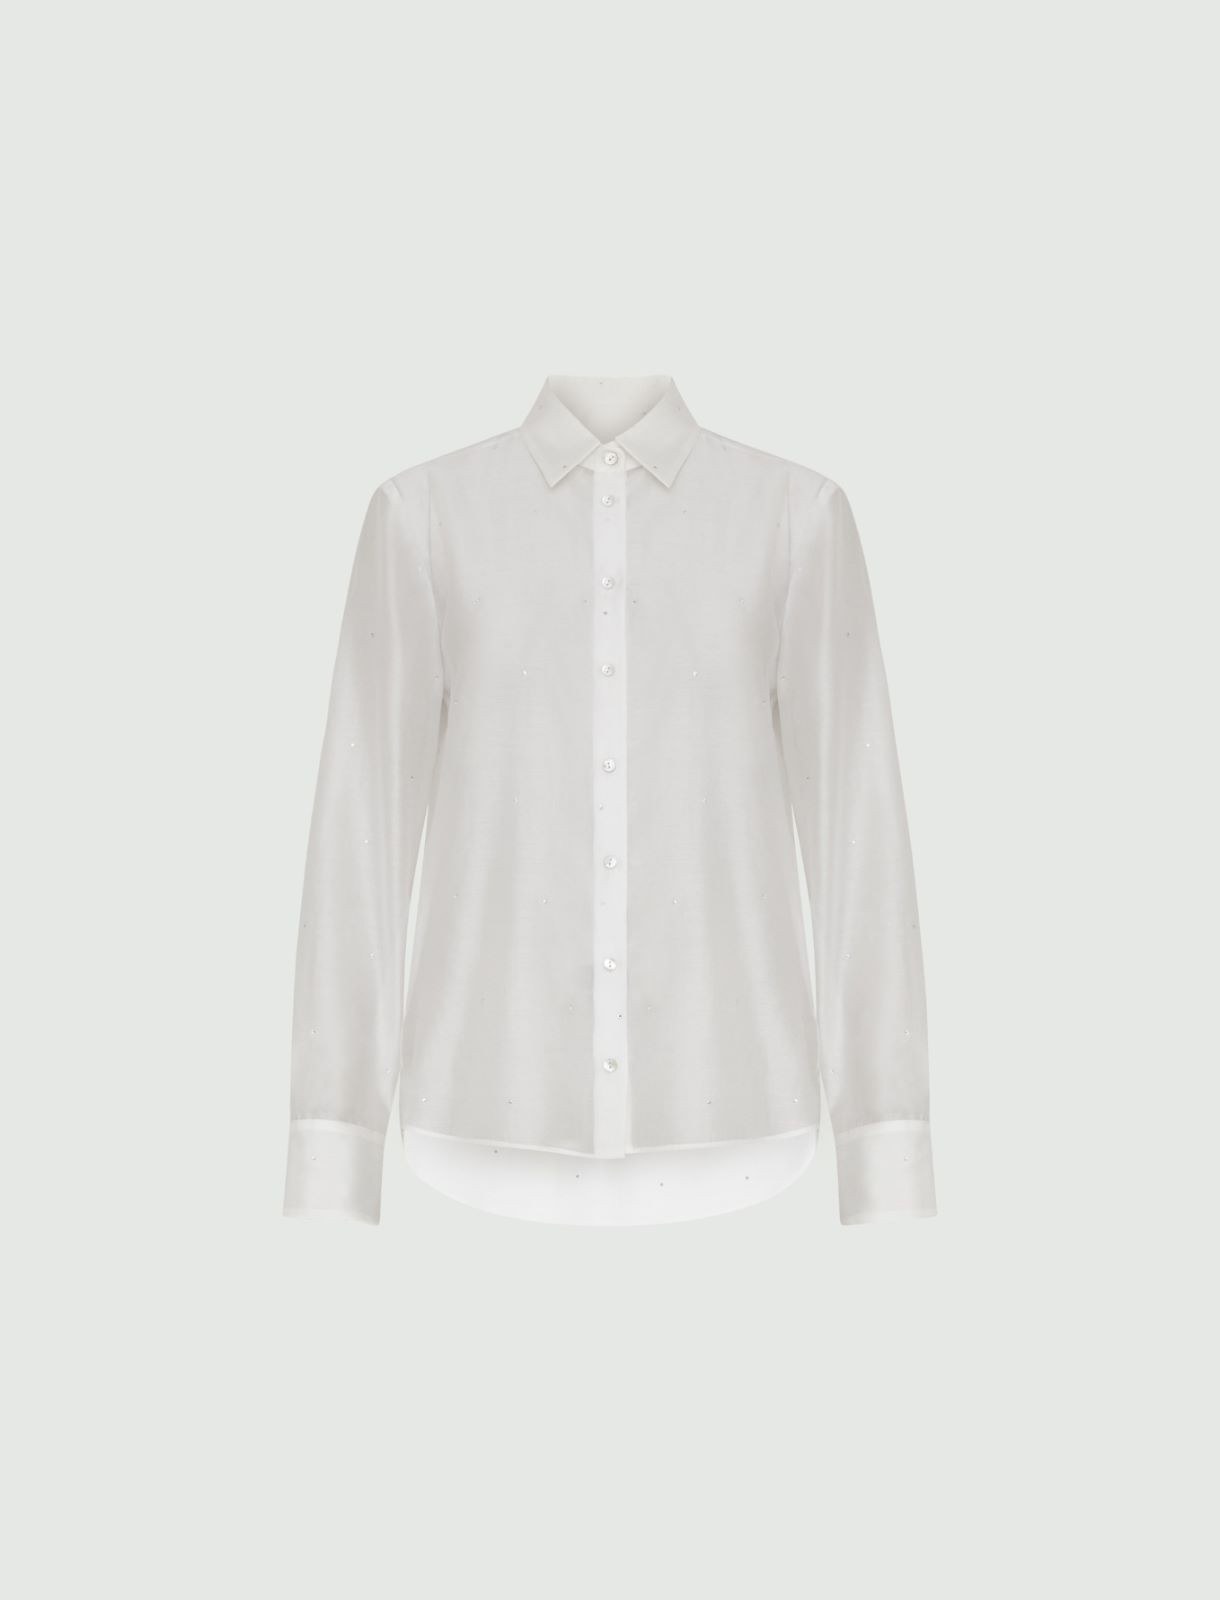 Rhinestone shirt - White - Marella